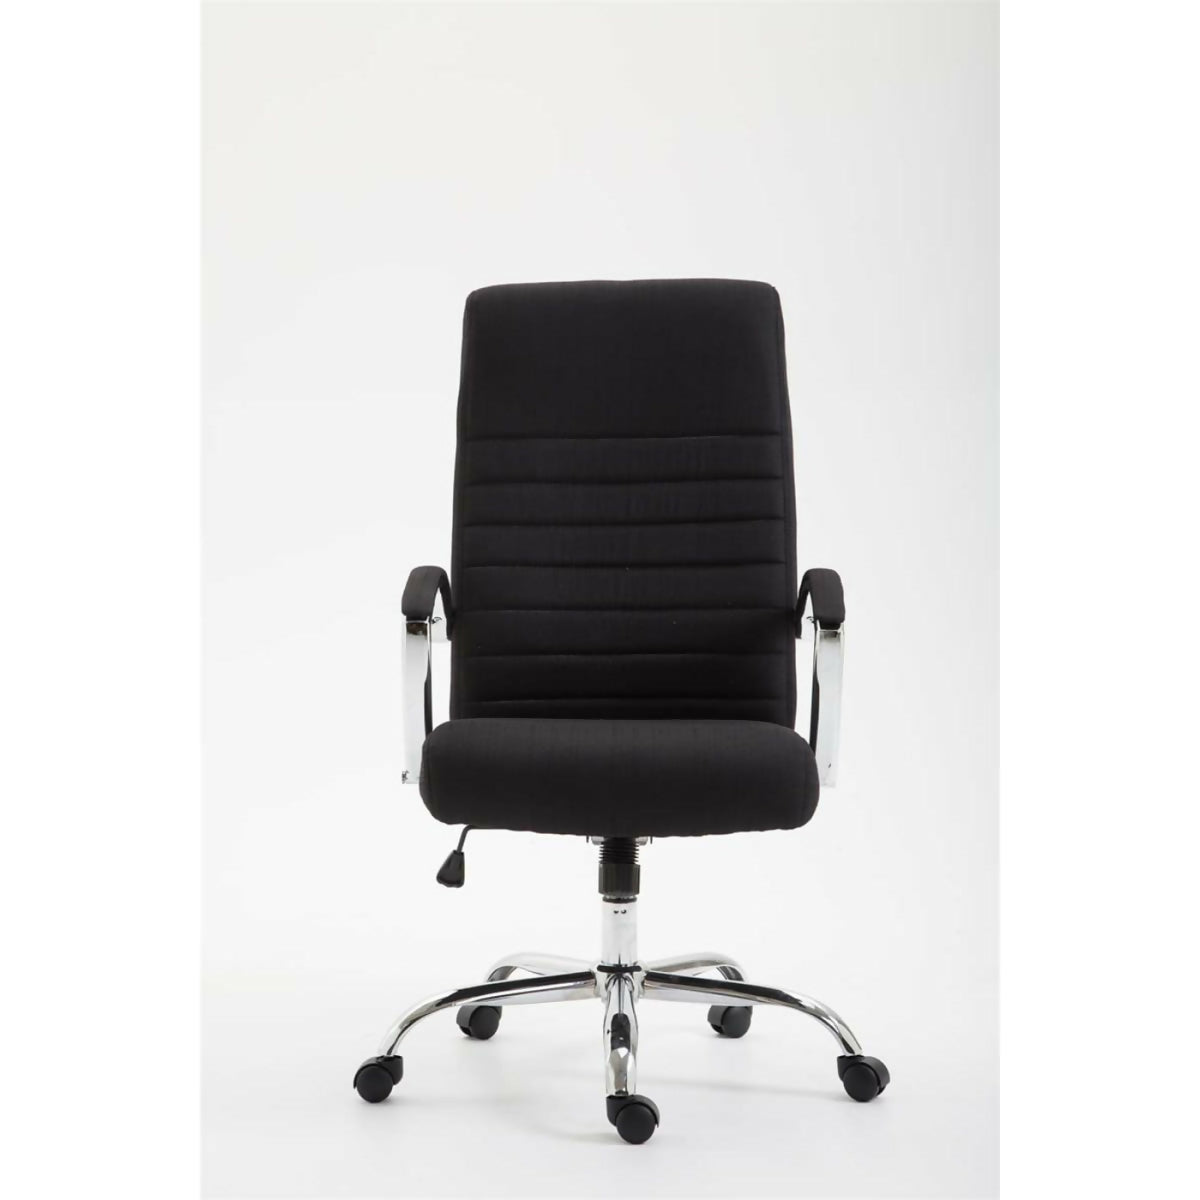 Valais office armchair - Black fabric - 0